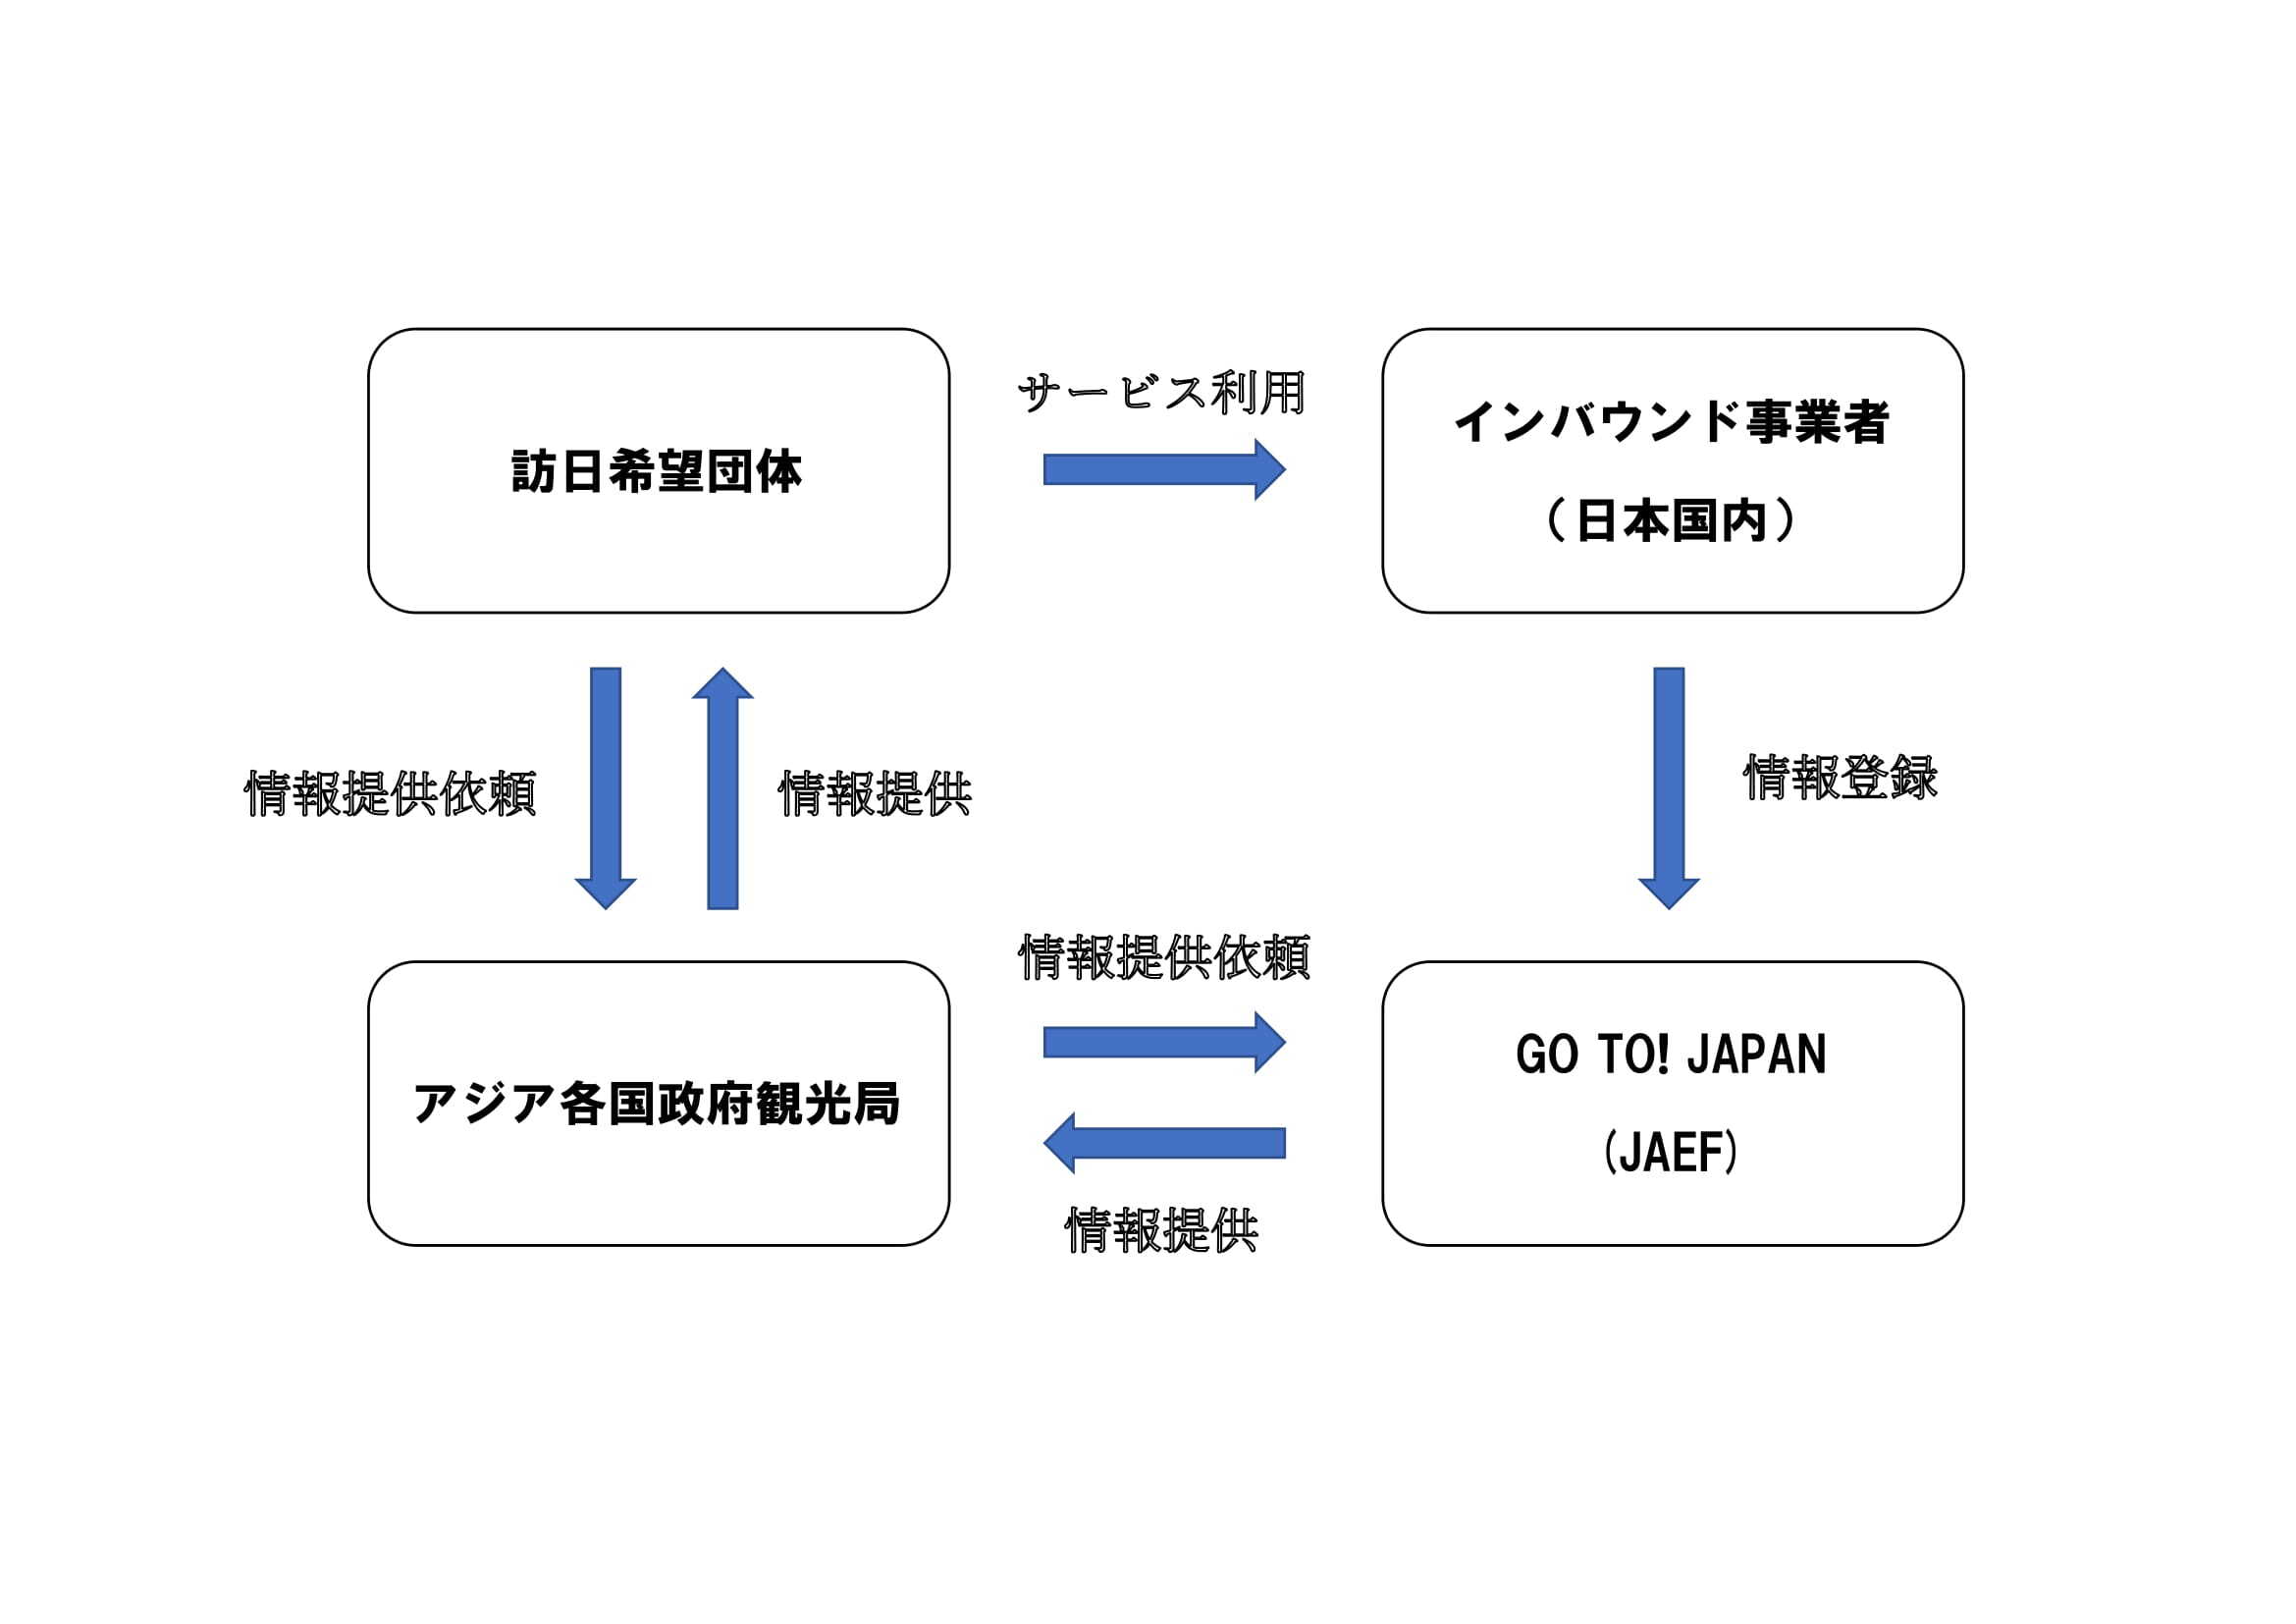 GO TO! JAPANキャンペーン　スキーム図